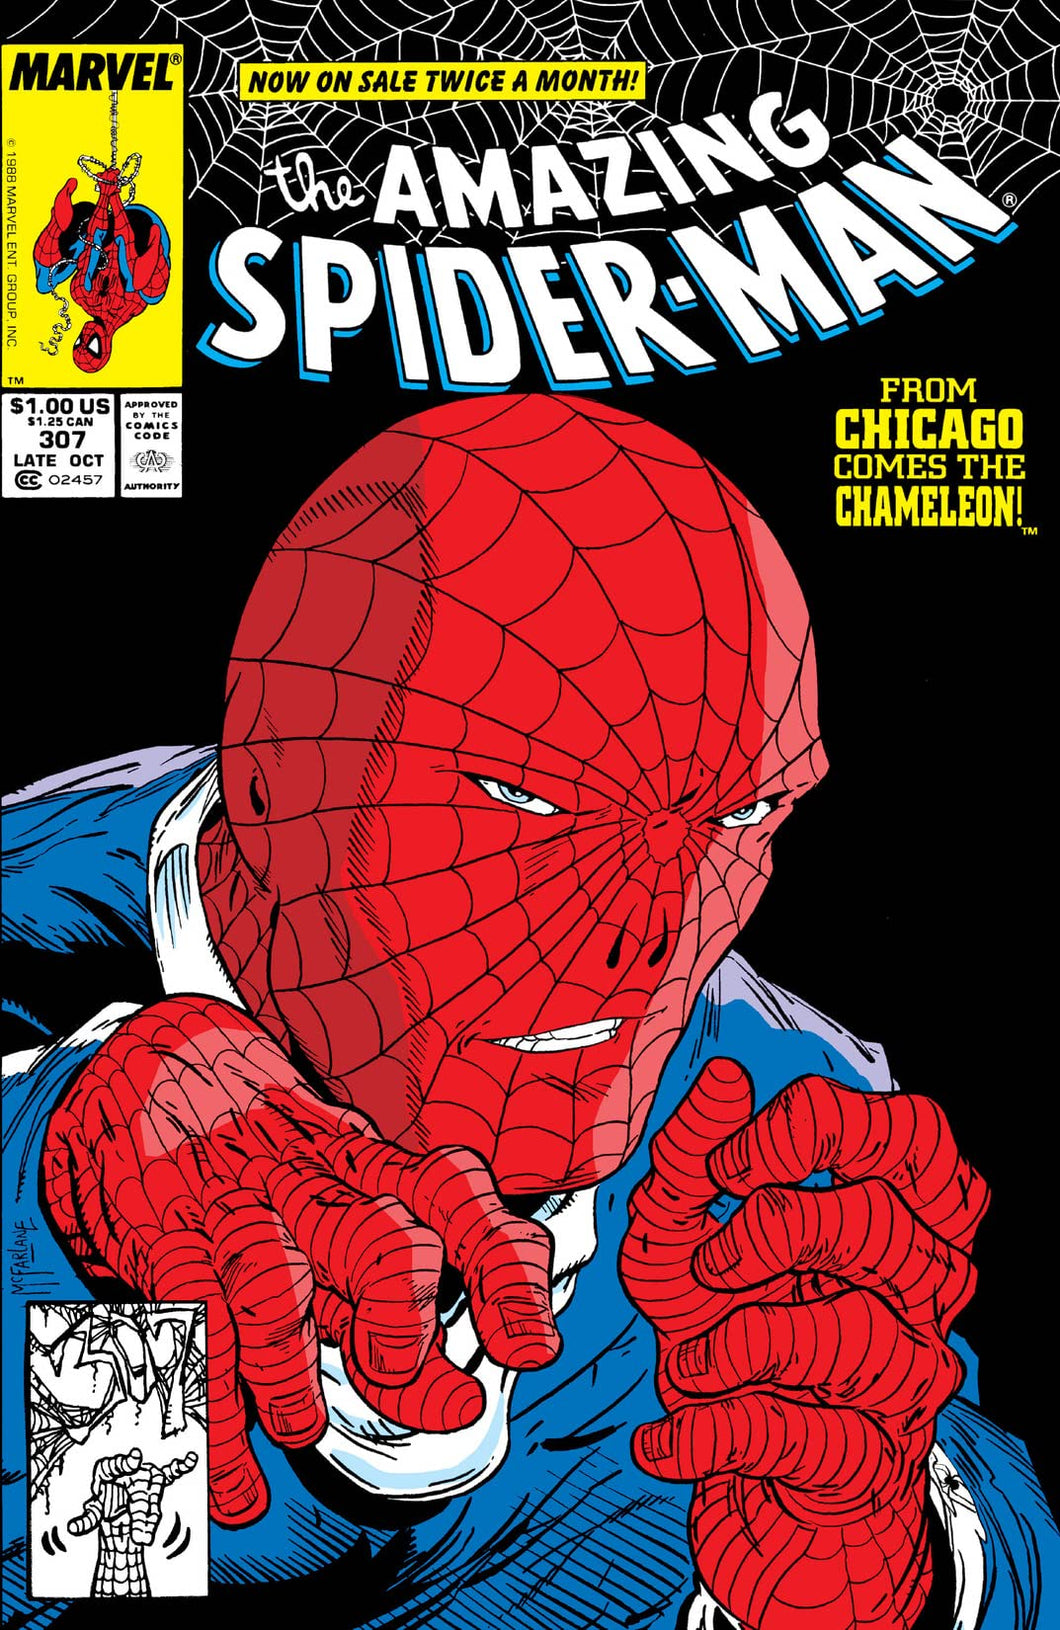 Amazing Spider-Man #307 (Bronze Age)